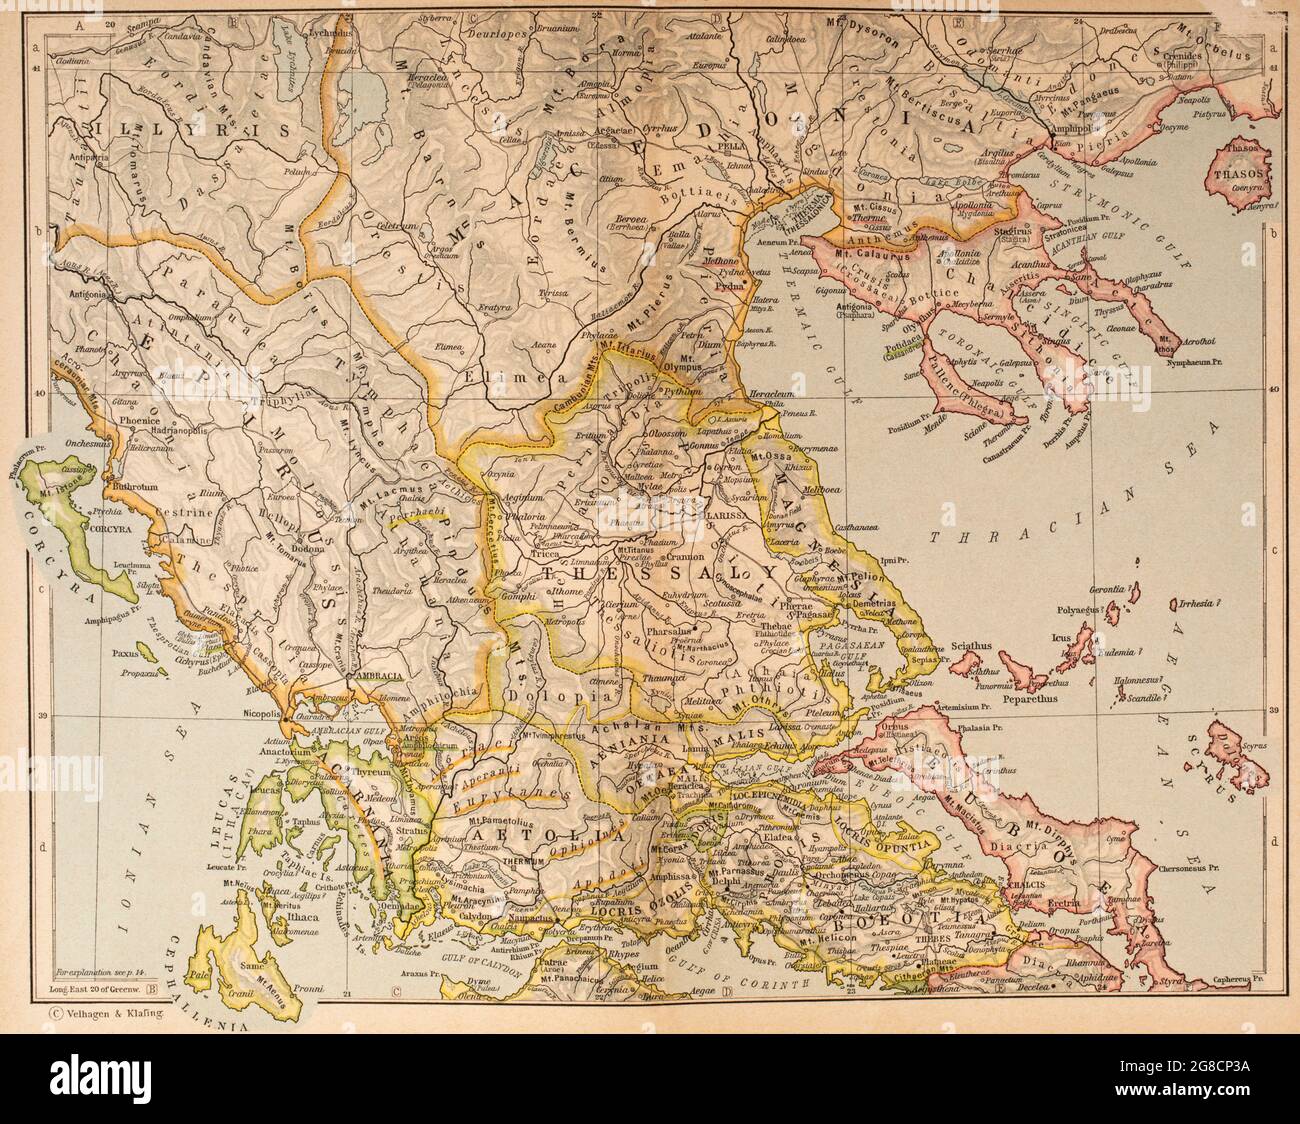 Mappa della Grecia antica, parte settentrionale. Da Atlante storico, pubblicato nel 1923. Foto Stock